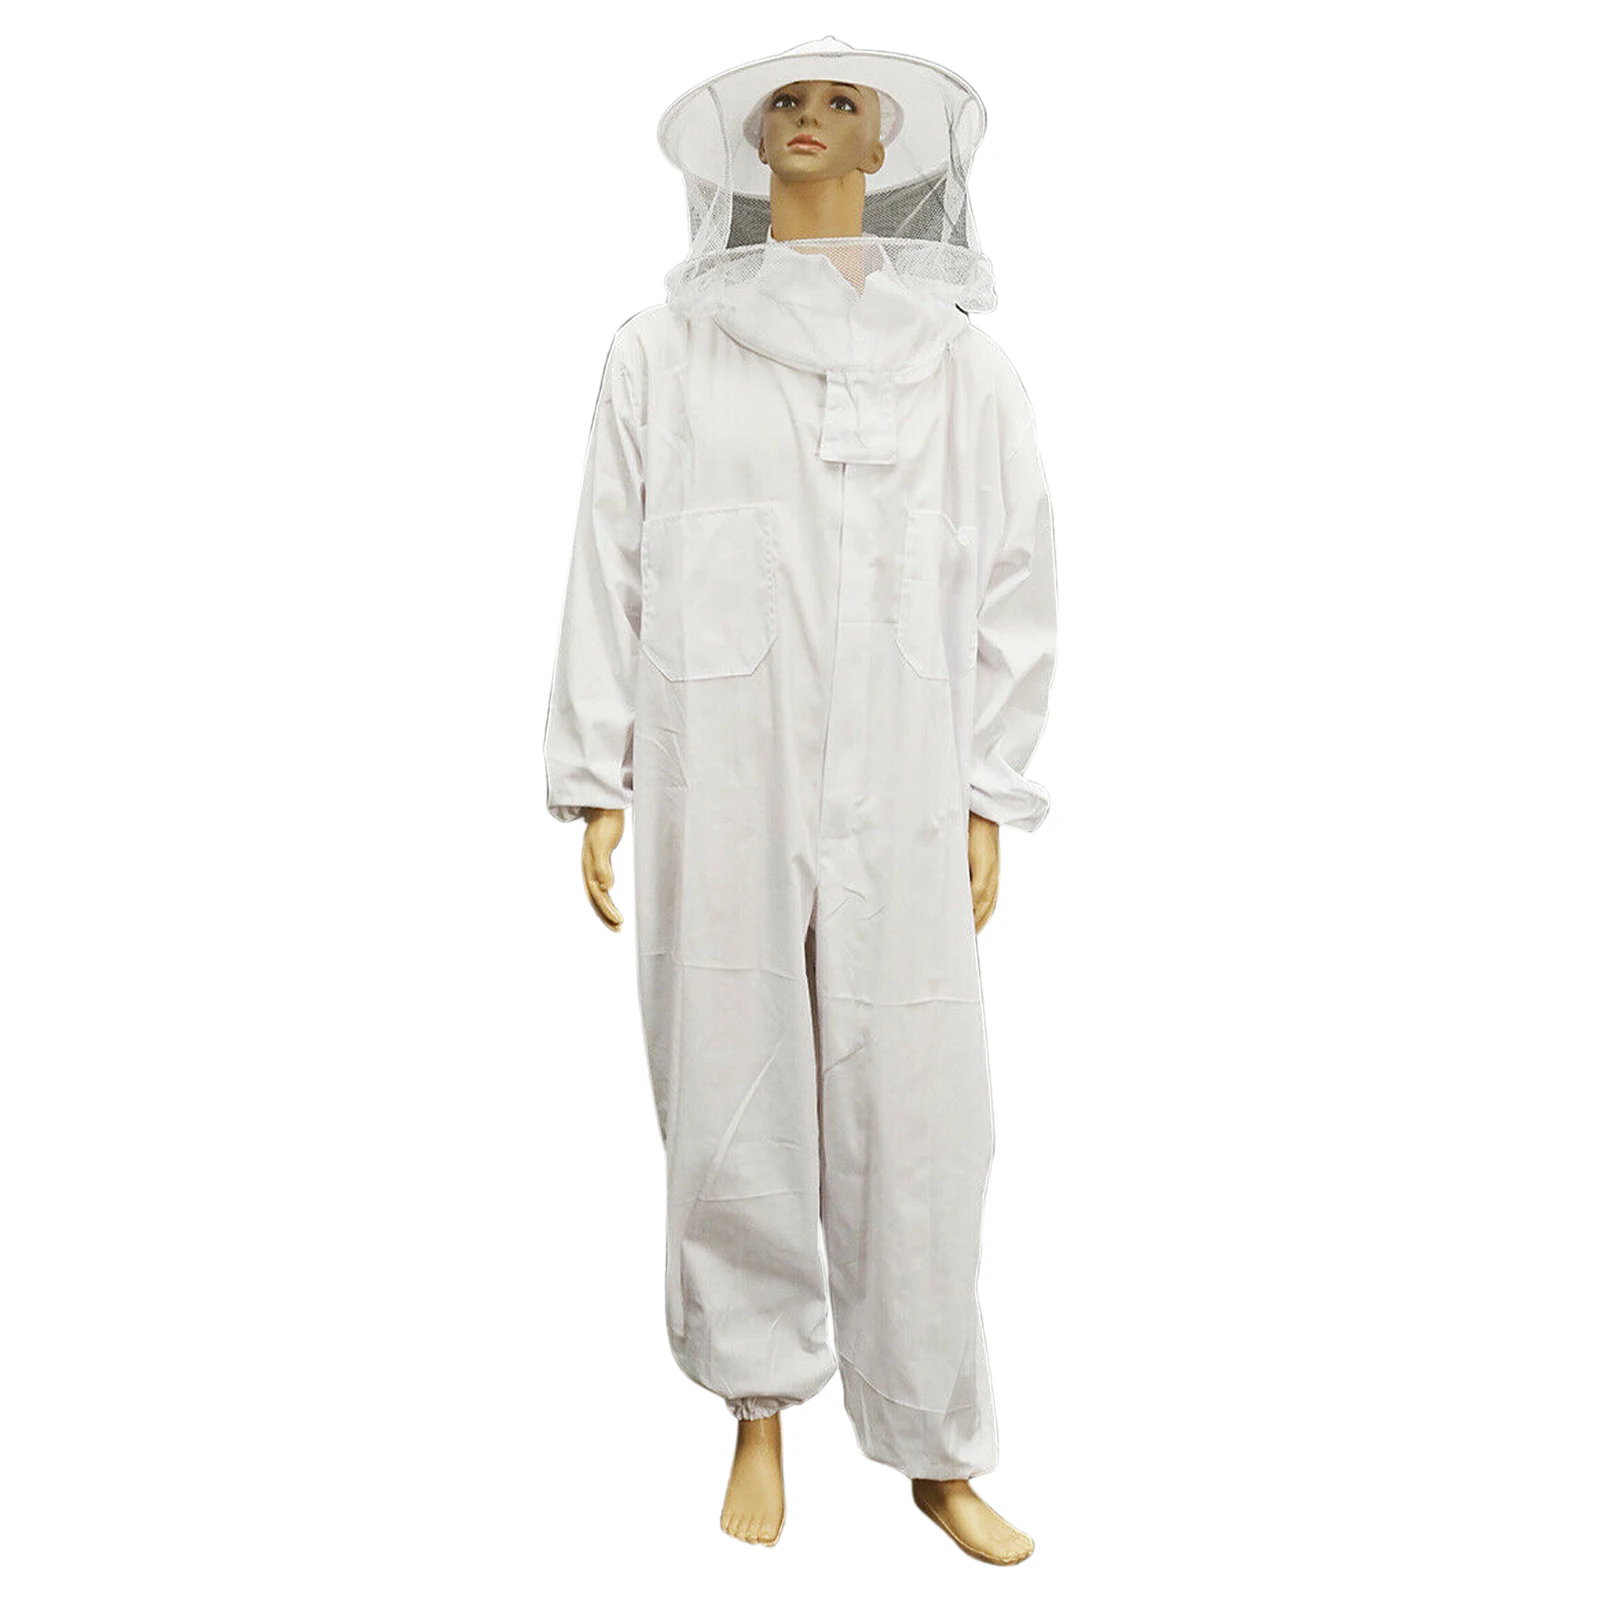 

Полноразмерная защитная одежда, шапка против пчел, наряд, домашний пчеловодный костюм, профессиональный защитный костюм на молнии с вуалью ...